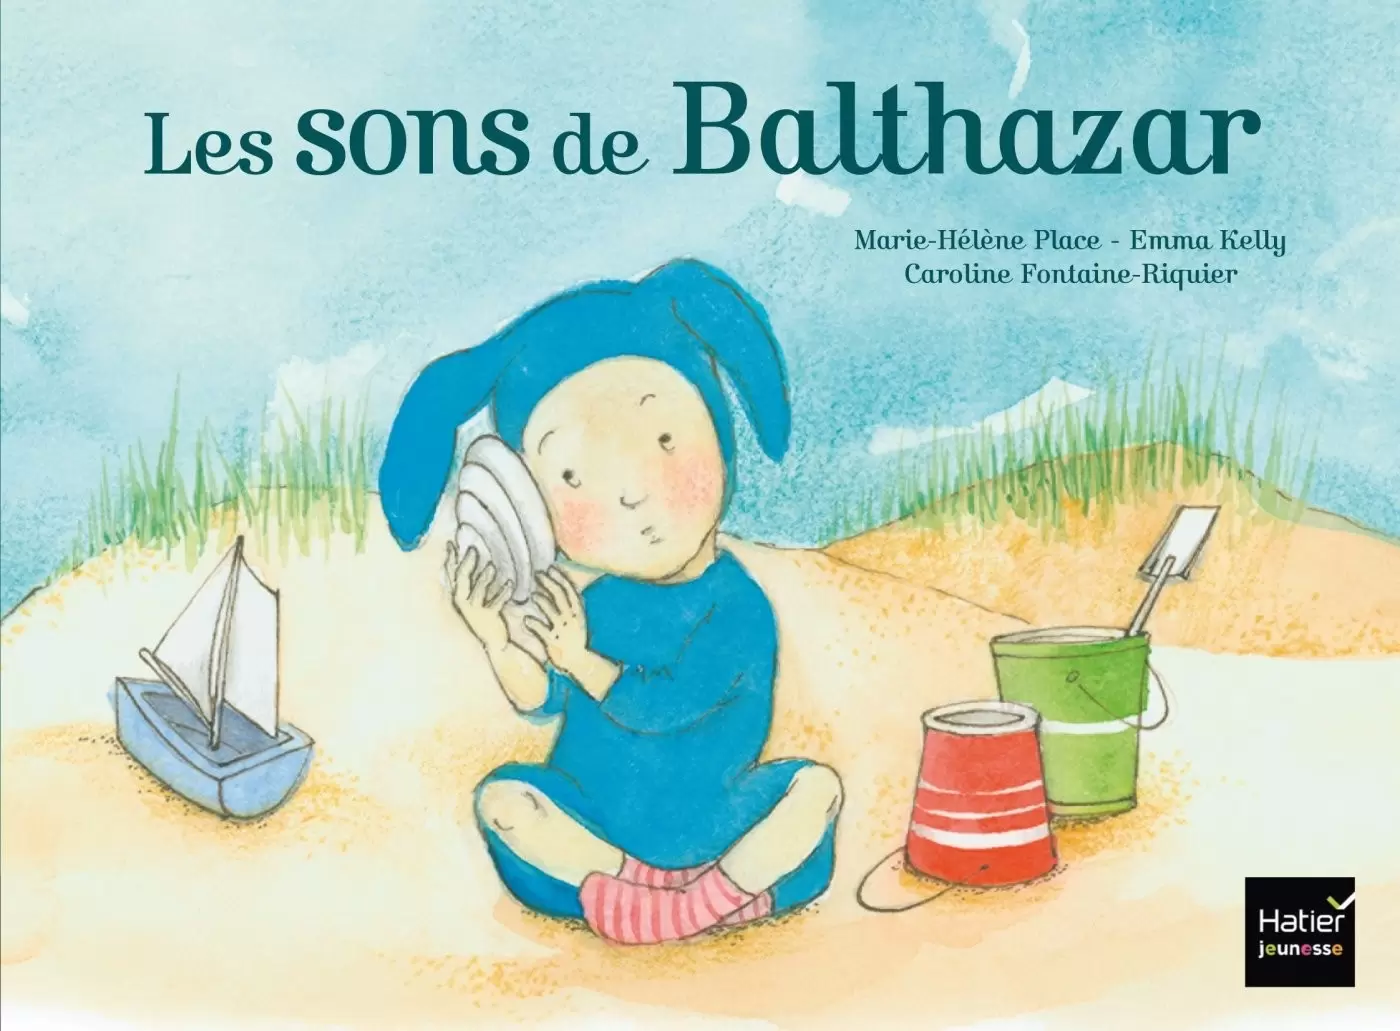 Balthazar - Les sons de Balthazar